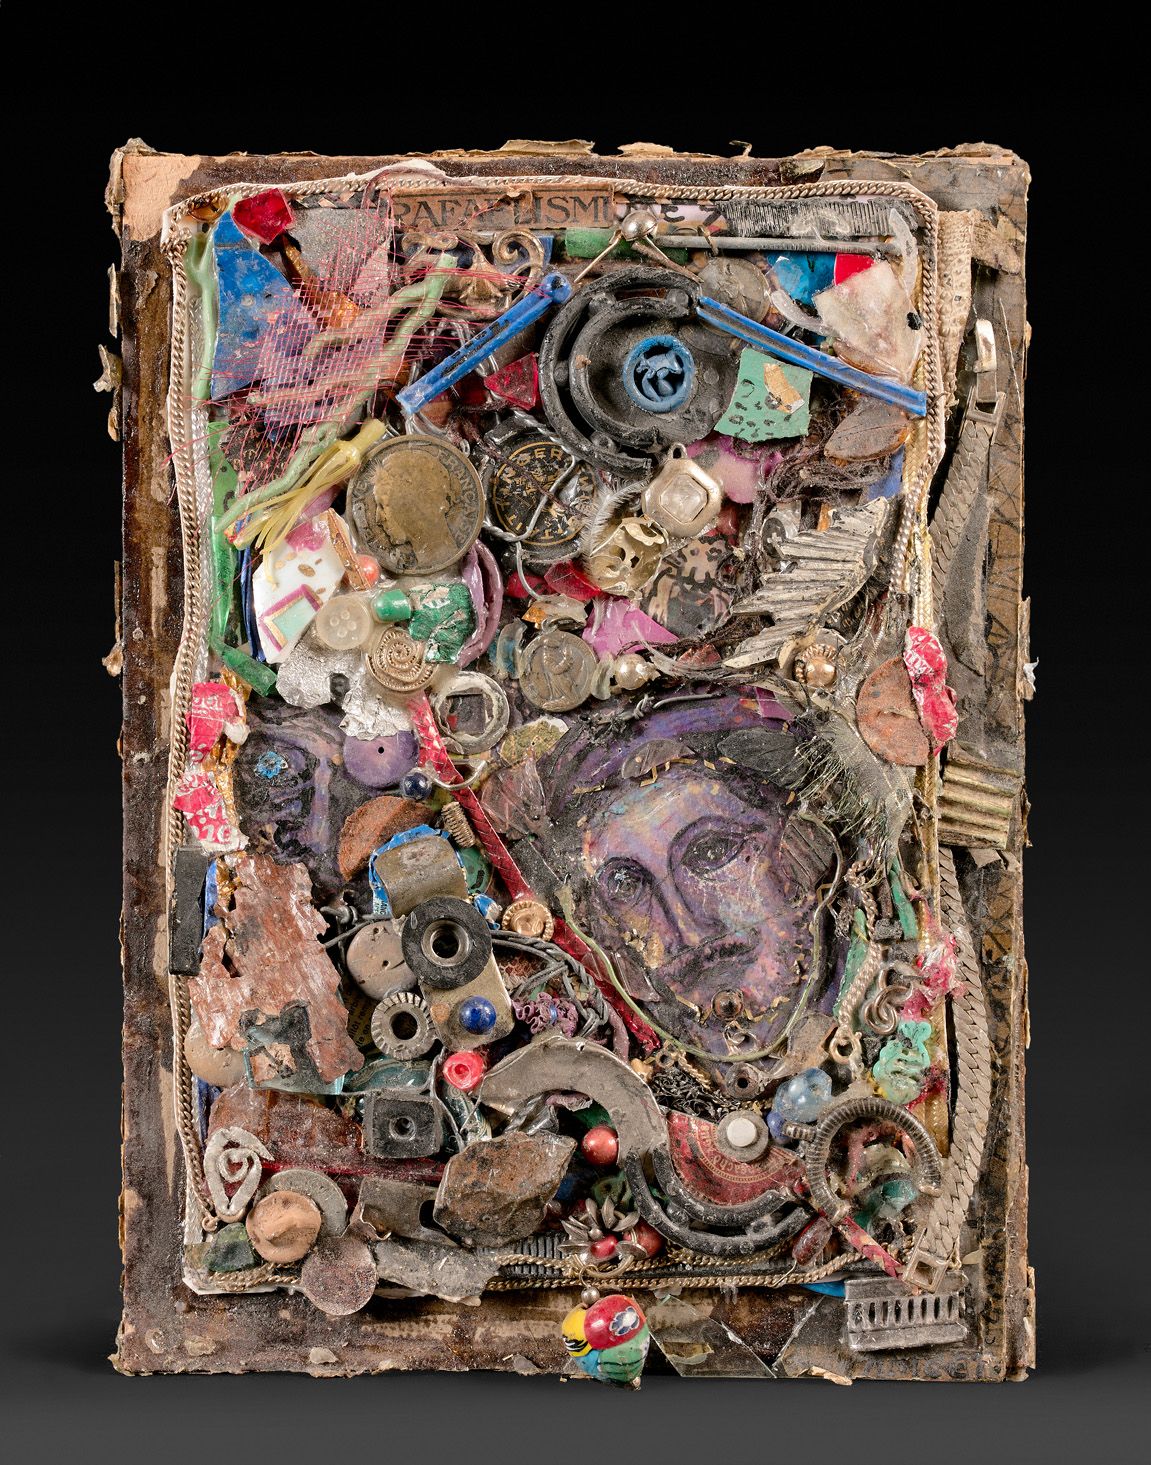 Null 弗朗索瓦-卡纳维 (1940-2021)

三首混合技术的作品。

第一个是浮雕，一个人的脸上有硬币、卵石、奖章、符咒。高度24 - 宽度18厘米

&hellip;